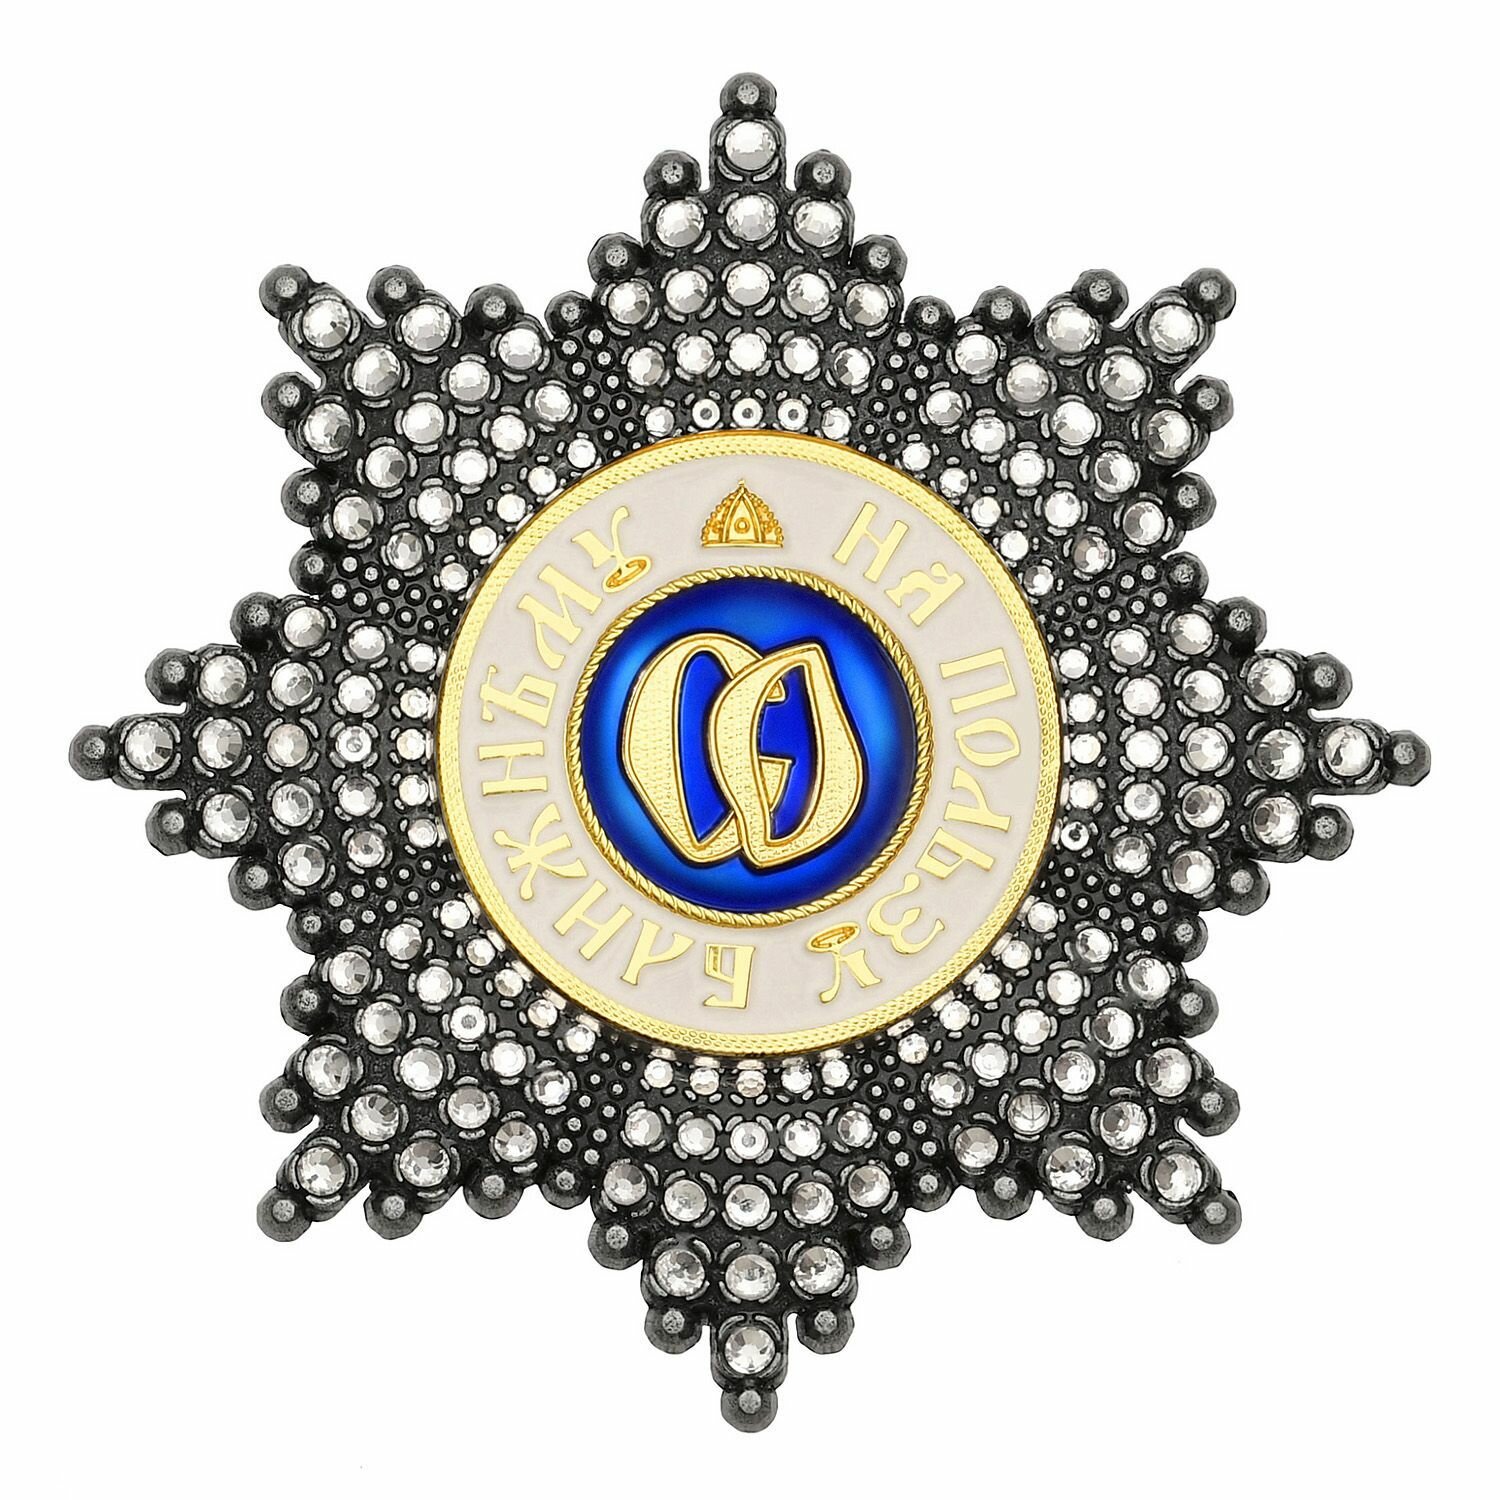 Звезда ордена Святой Ольги со стразами, полноразмерный муляж Российской империи